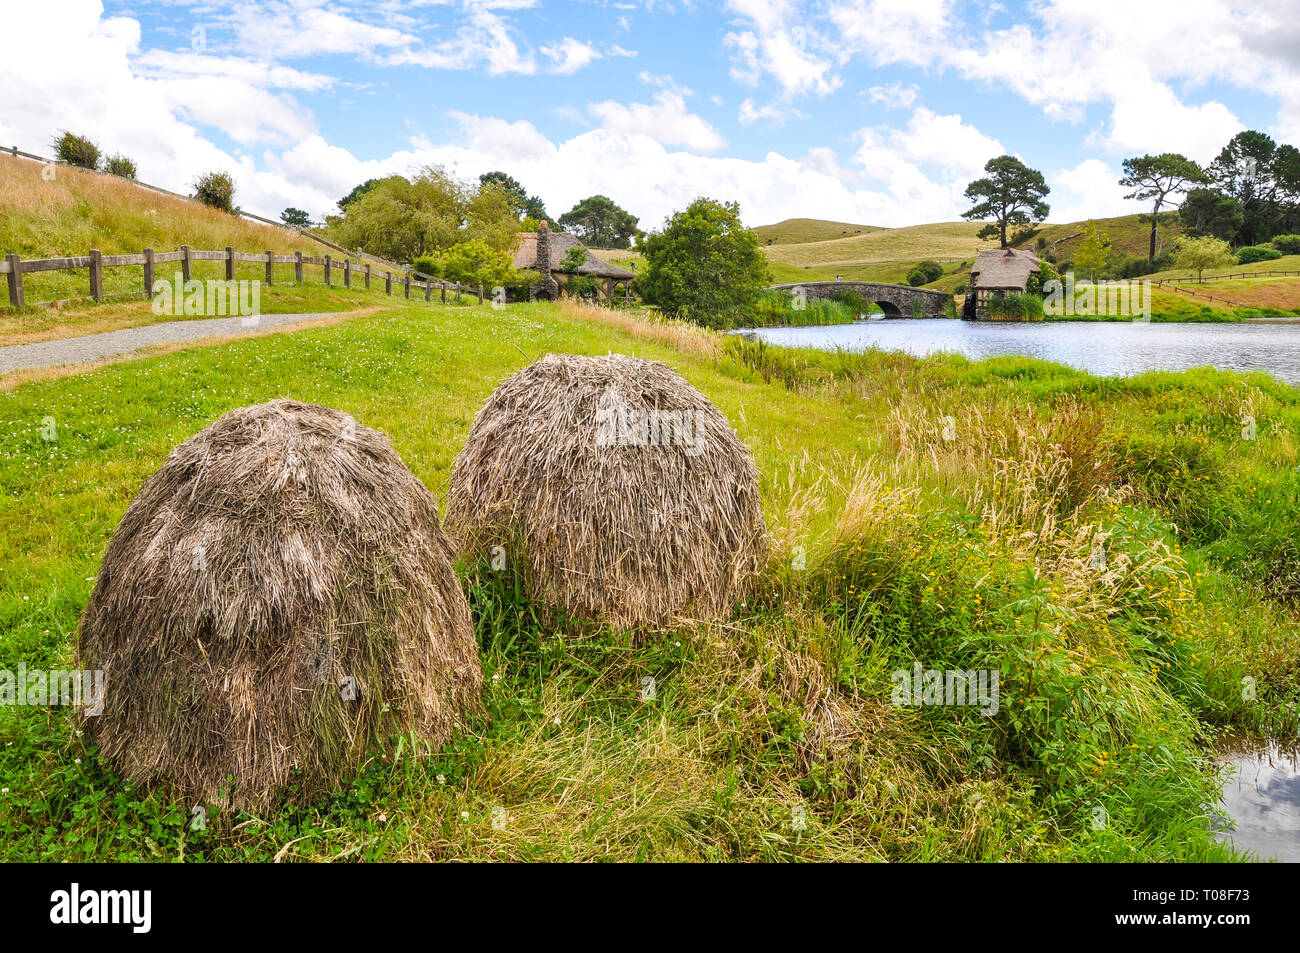 Hobbiton Movie set - Location per il Signore degli Anelli e Lo Hobbit film. Estremità del sacchetto lago, mulino. attrazione turistica nella regione di Waikato in Nuova Zelanda Foto Stock